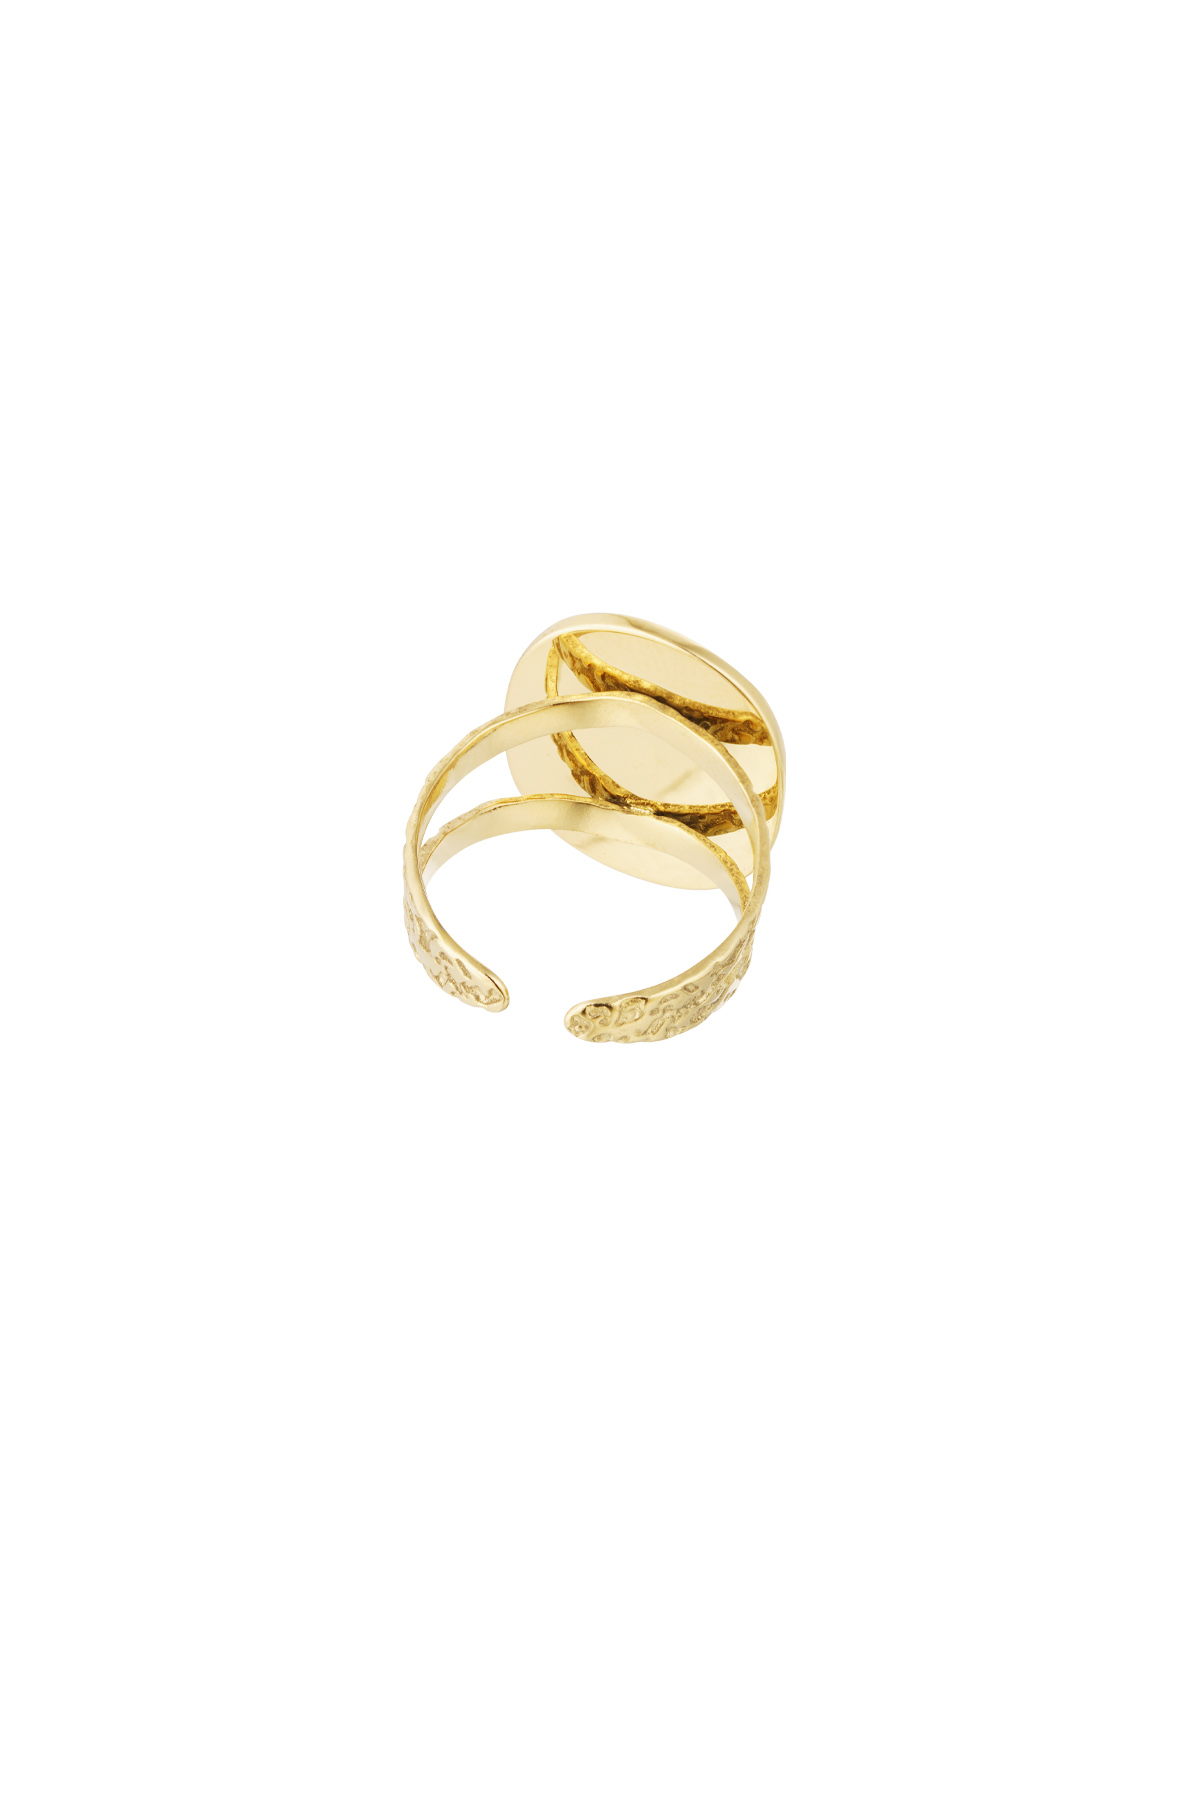 Ring steen met ster - goud/roze h5 Afbeelding5